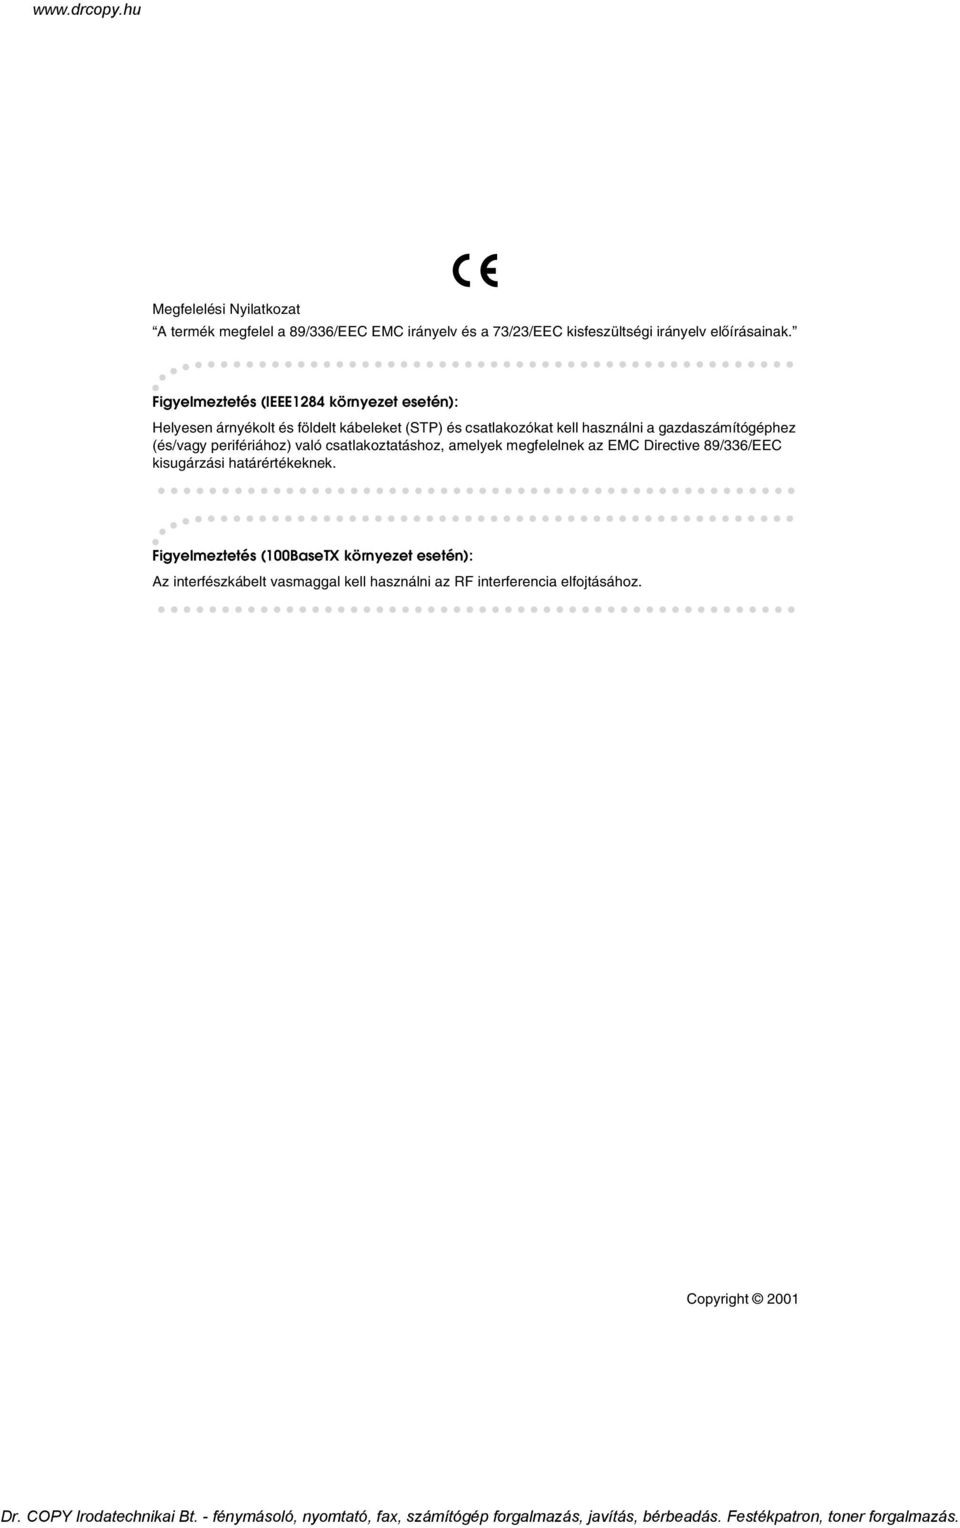 gazdaszámítógéphez (és/vagy perifériához) való csatlakoztatáshoz, amelyek megfelelnek az EMC Directive 89/336/EEC kisugárzási